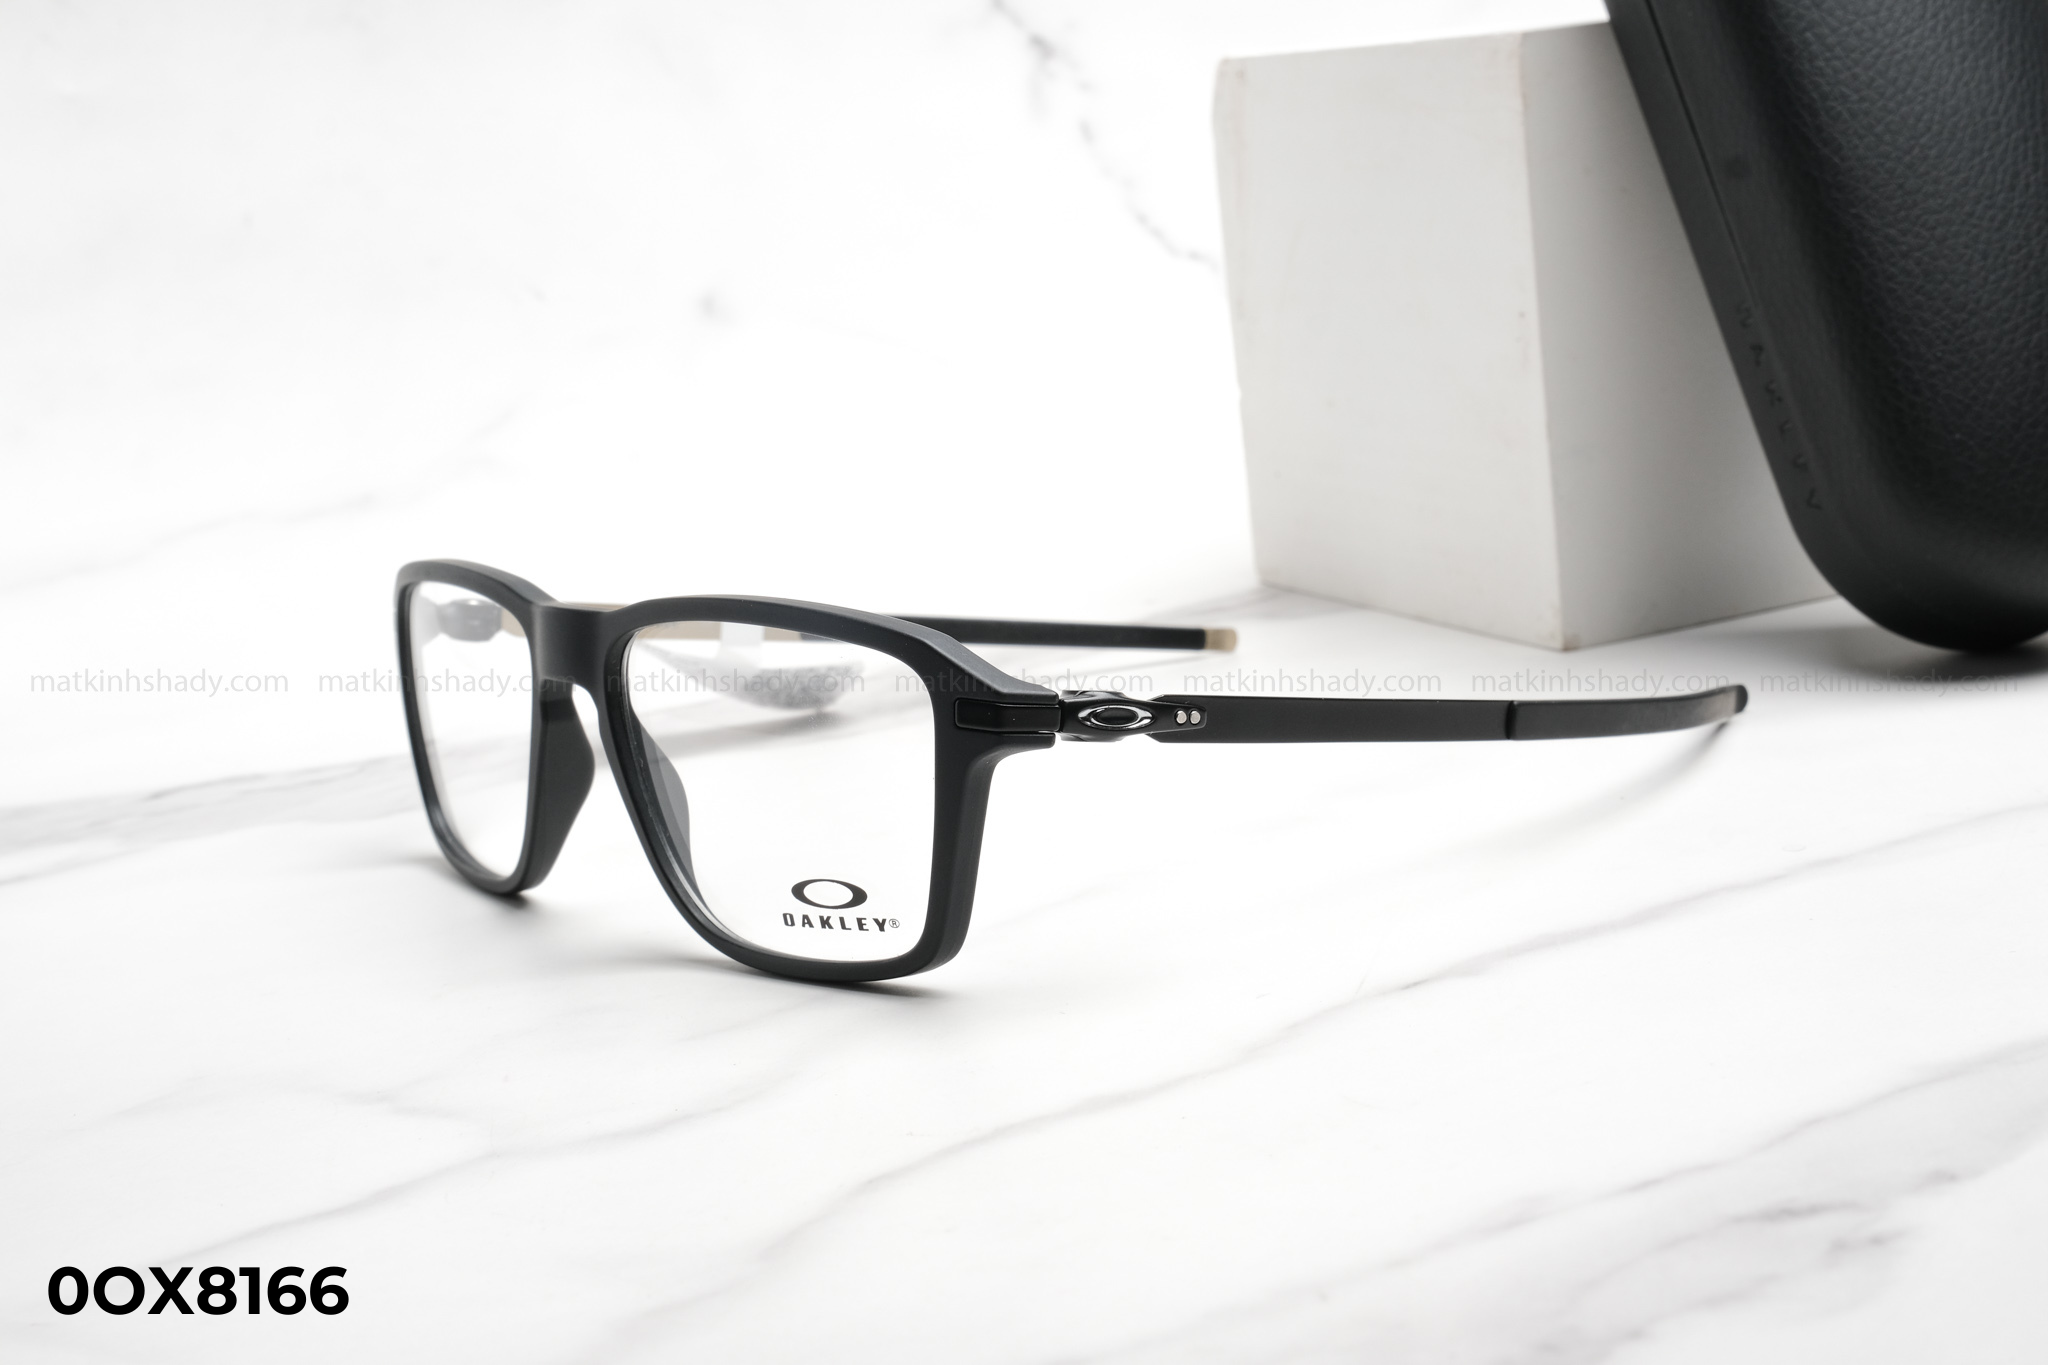  Oakley Eyewear - Glasses - 0OX8166 